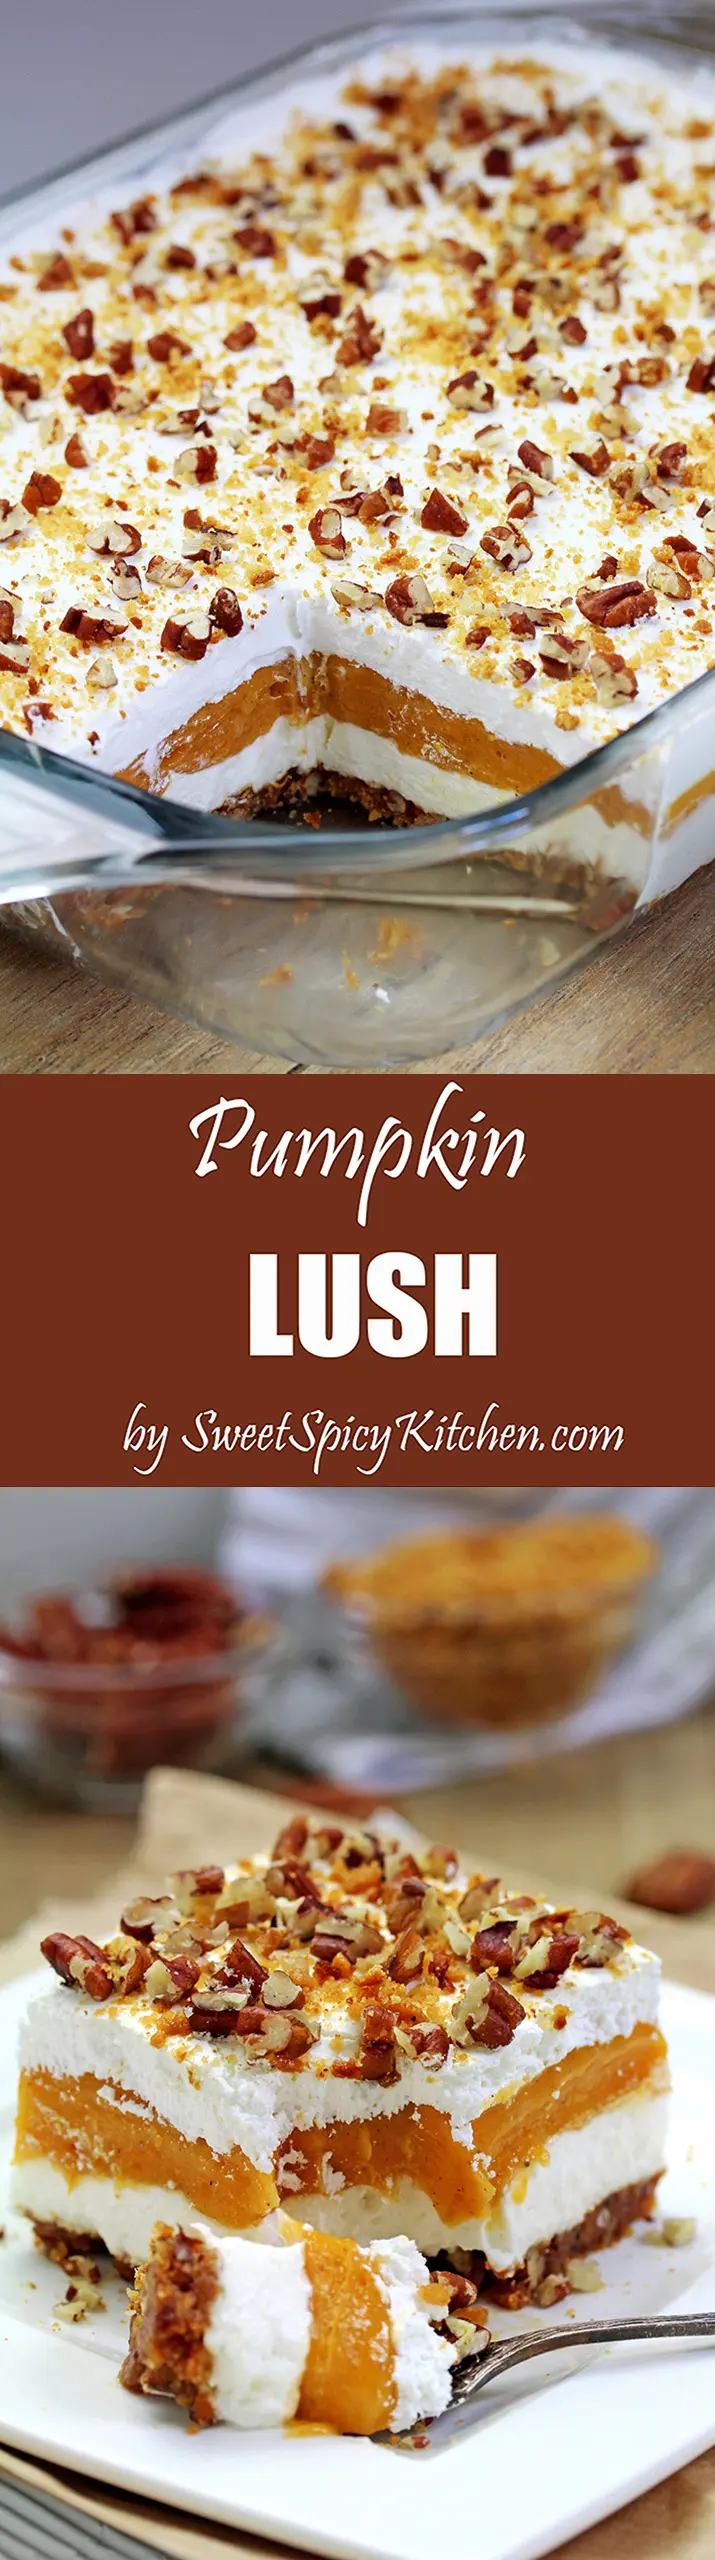 Pumpkin Lush